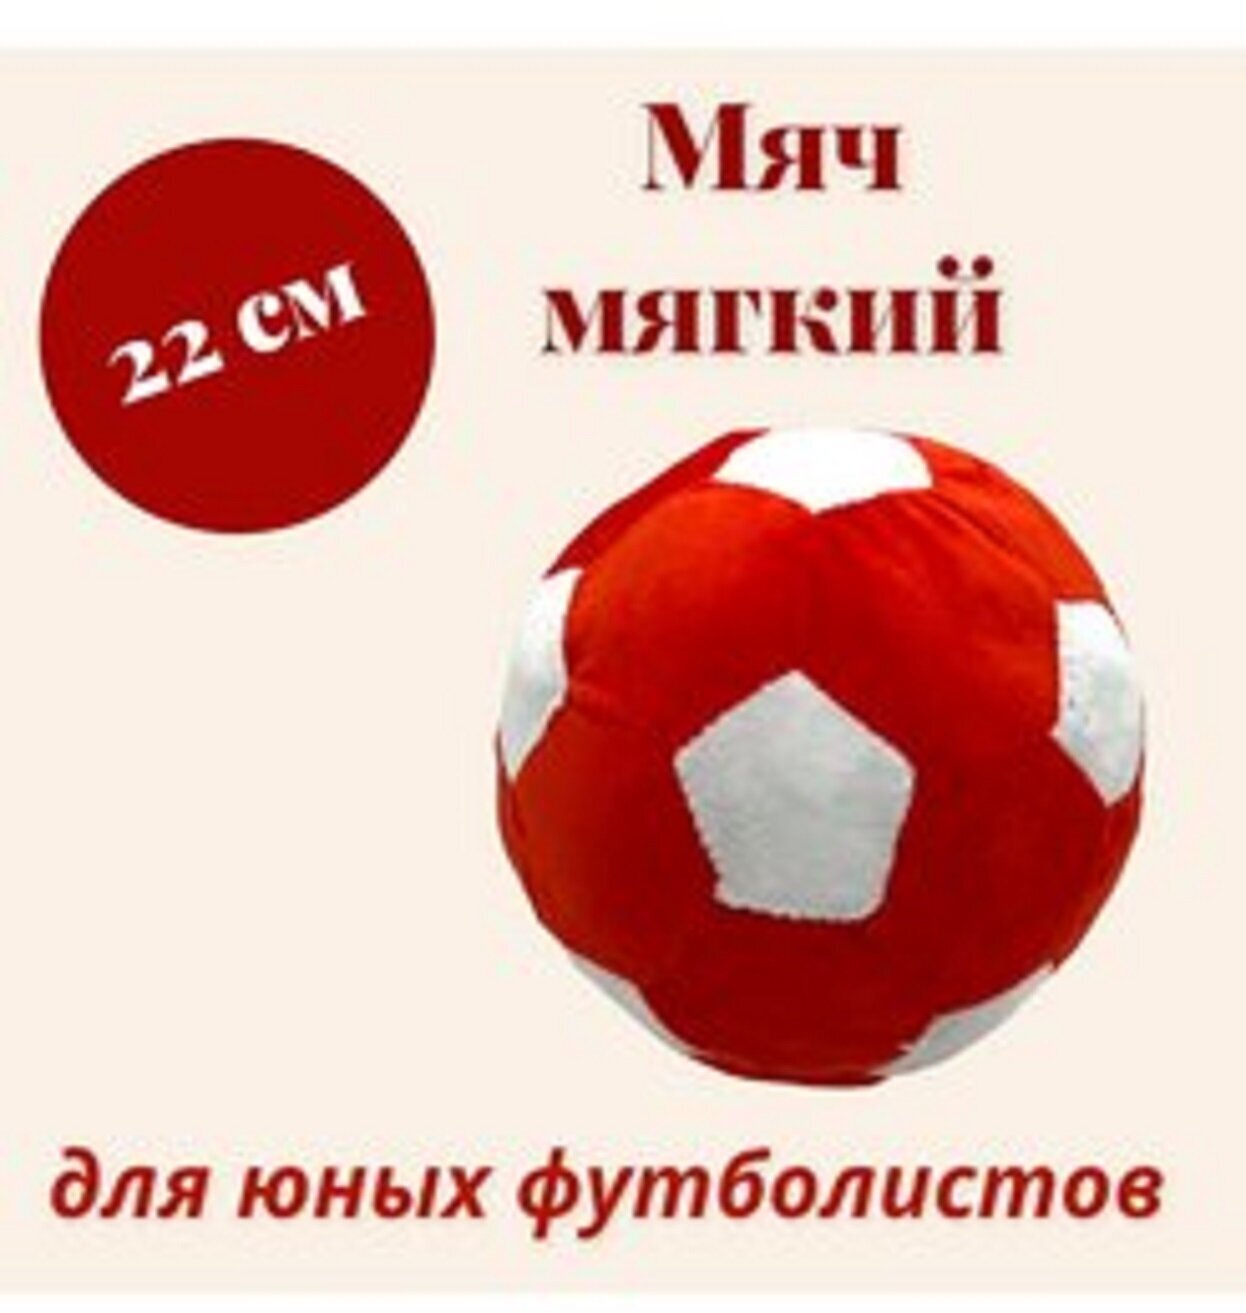 Мягкая игрушка Мяч плюшевый цвет красный, диаметр 22 см.